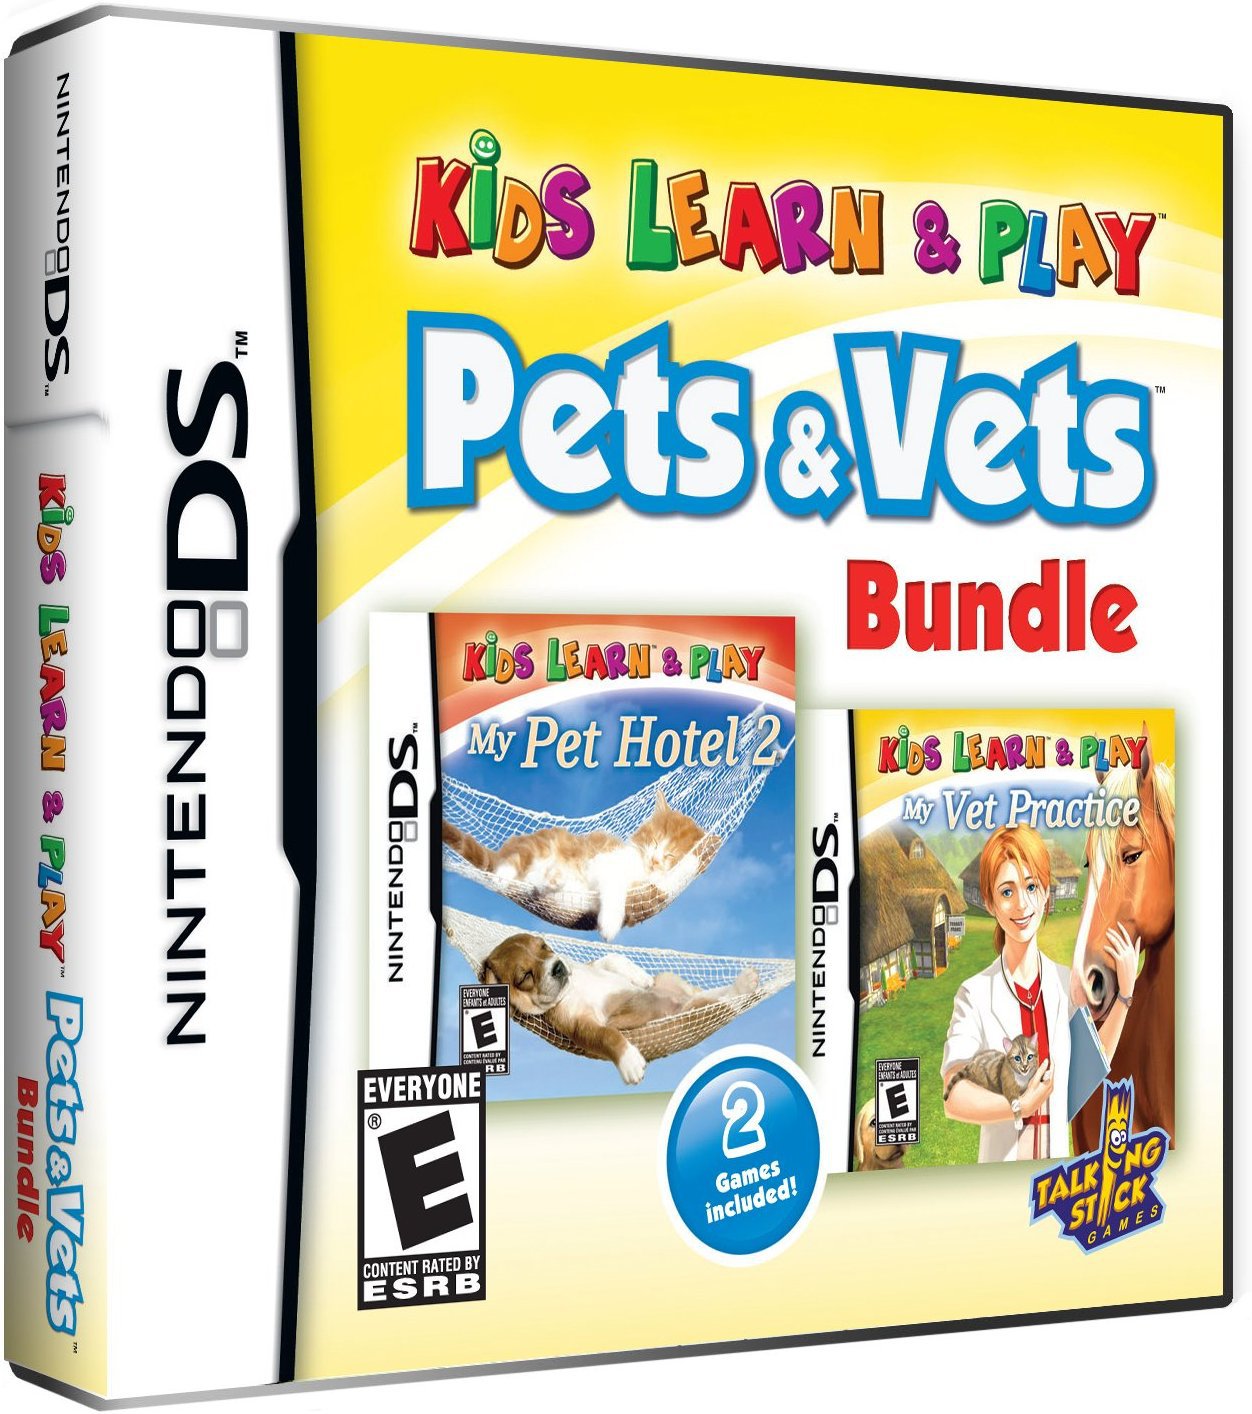 Kids Learn & Play: Pets & Vets